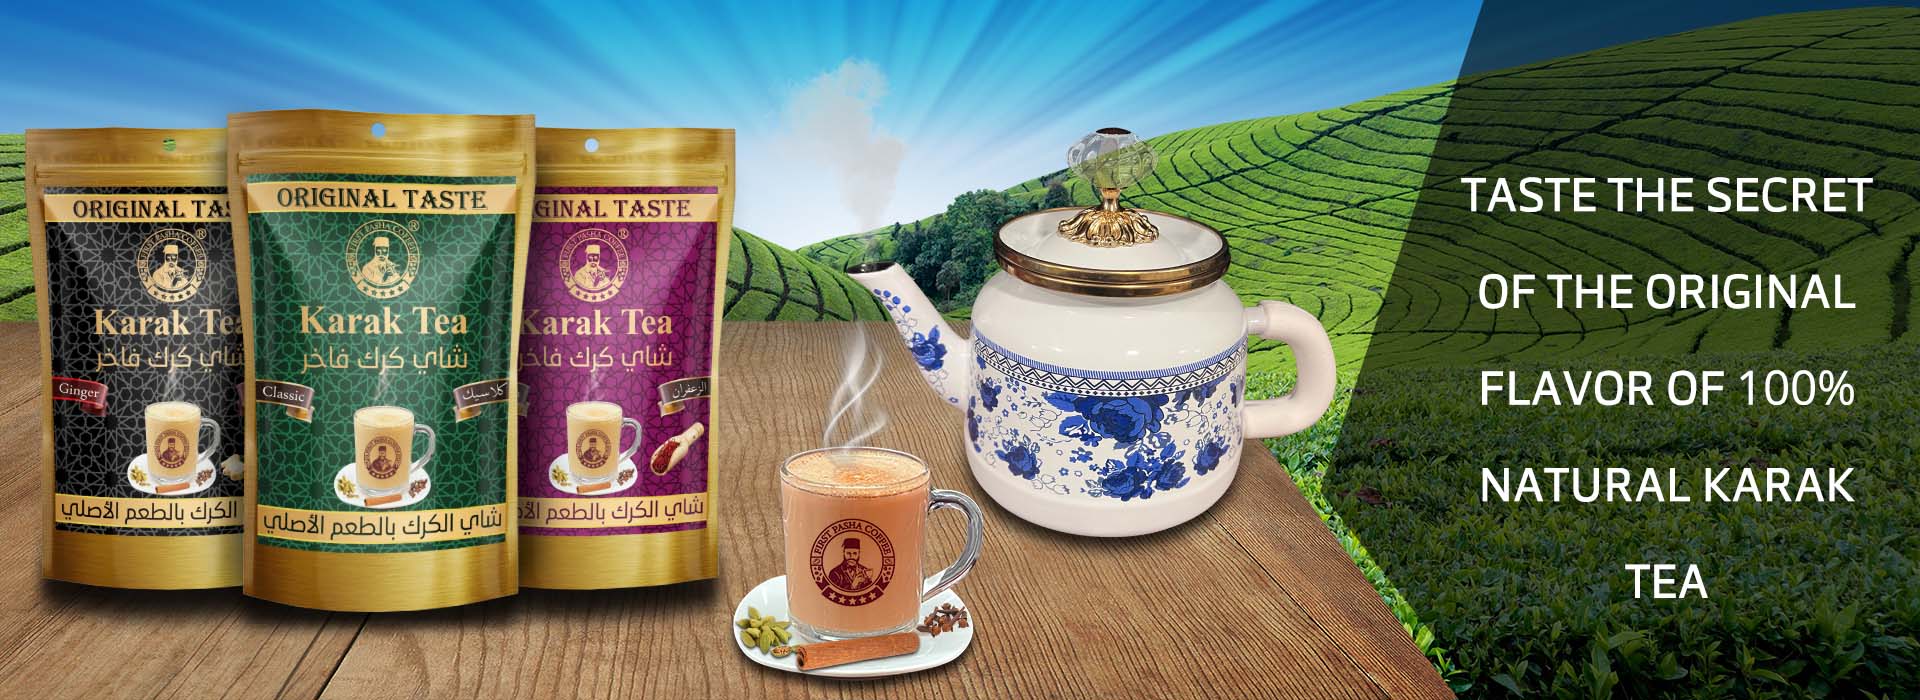 Karak Tea in02